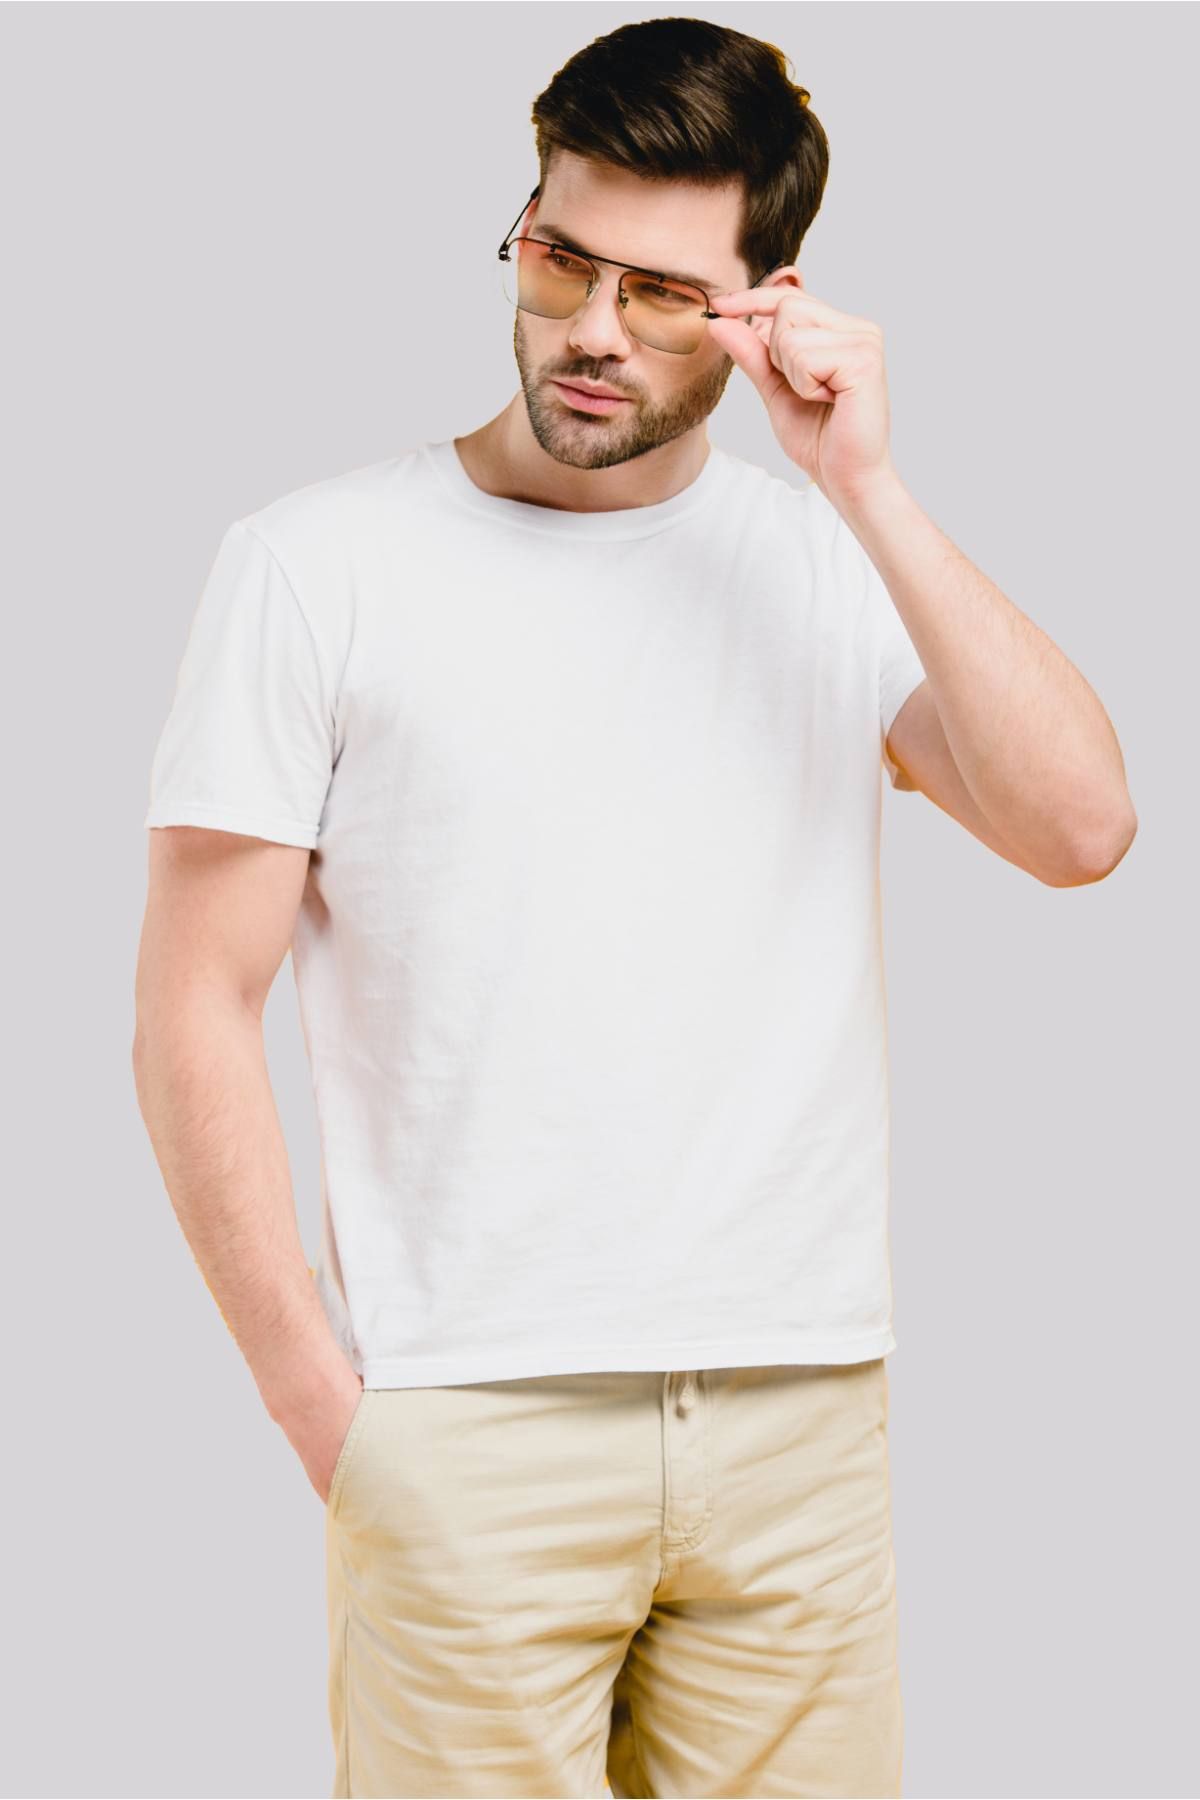 Jerdoni White Plain T Shirt